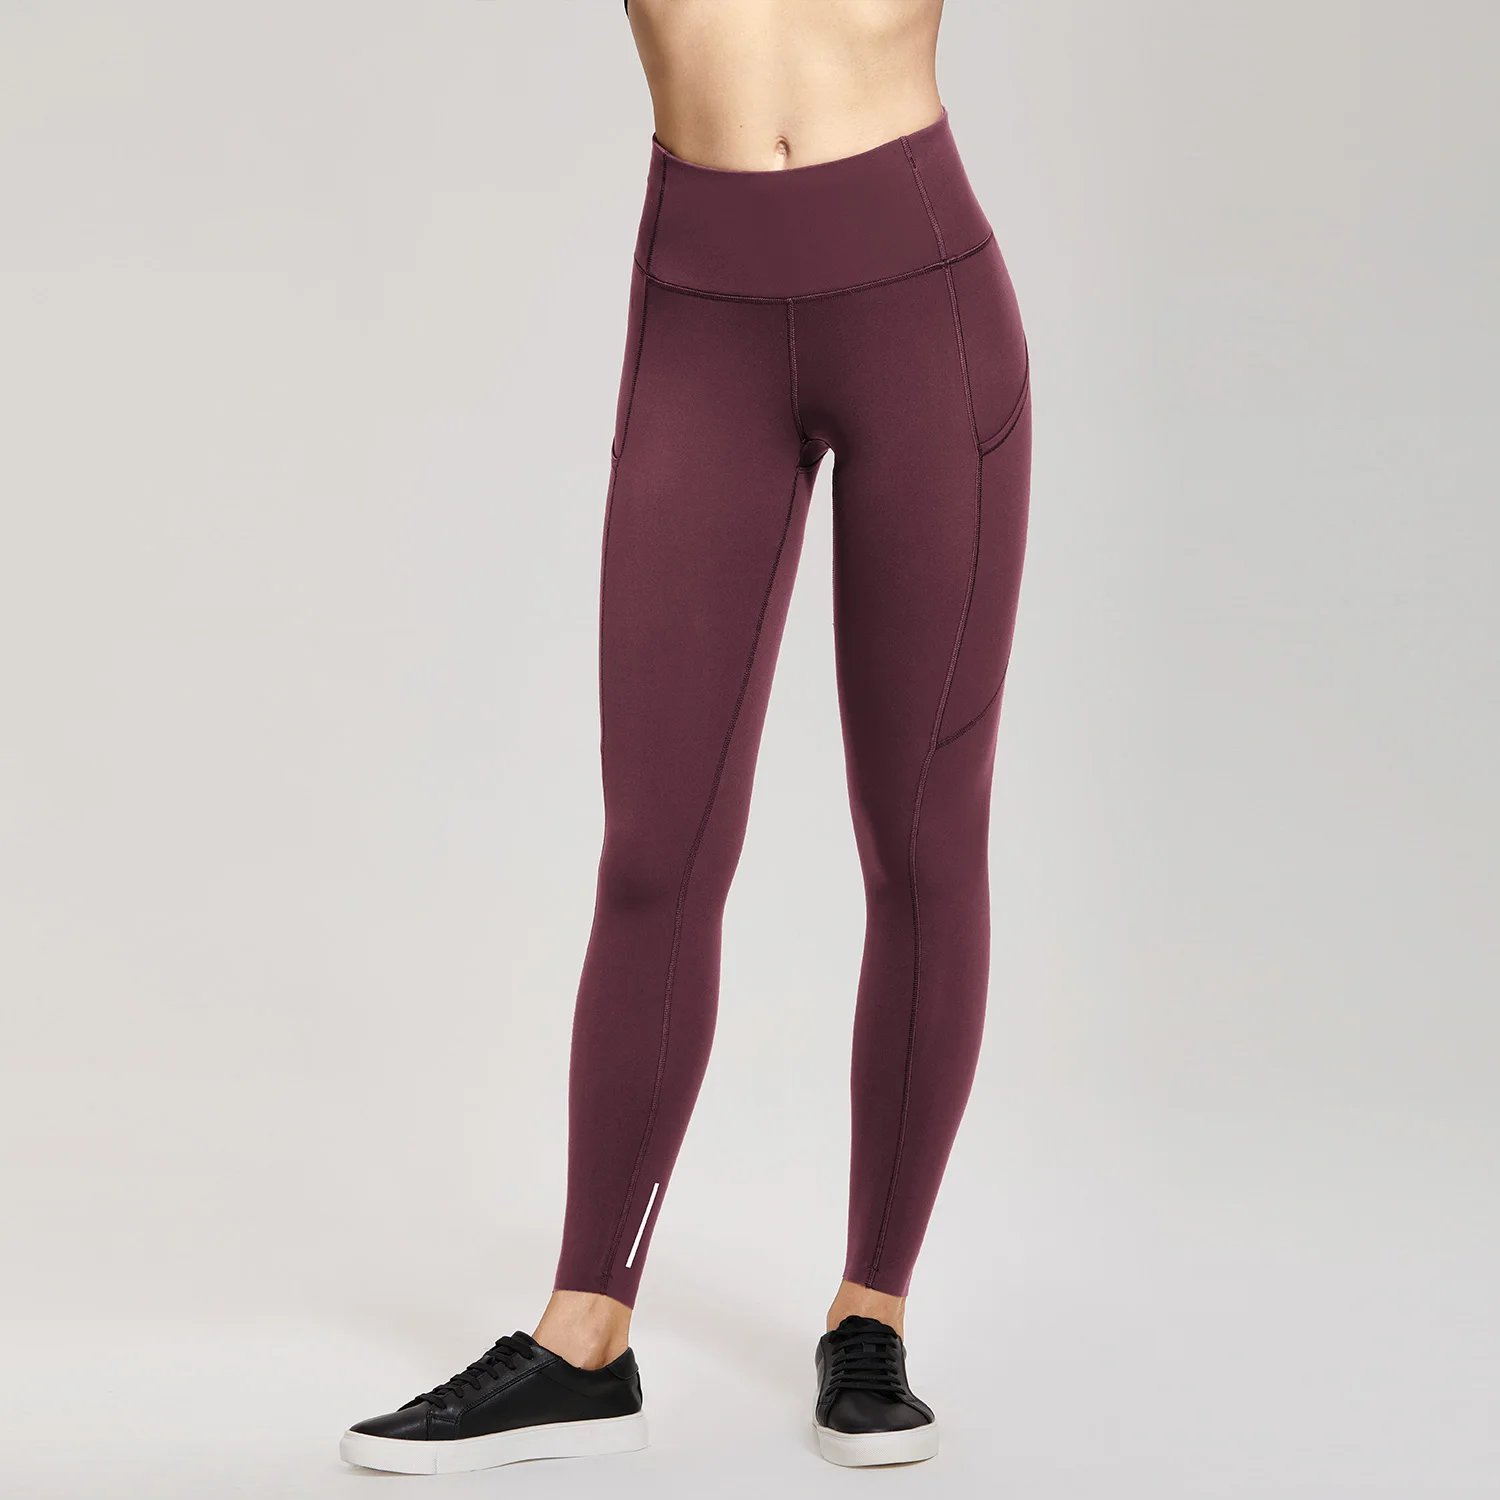 SYROKAN женские штаны для йоги с высокой талией и карманами, леггинсы для тренировок с эффектом обнажения-25 дюймов - Цвет: Arctic Plum09